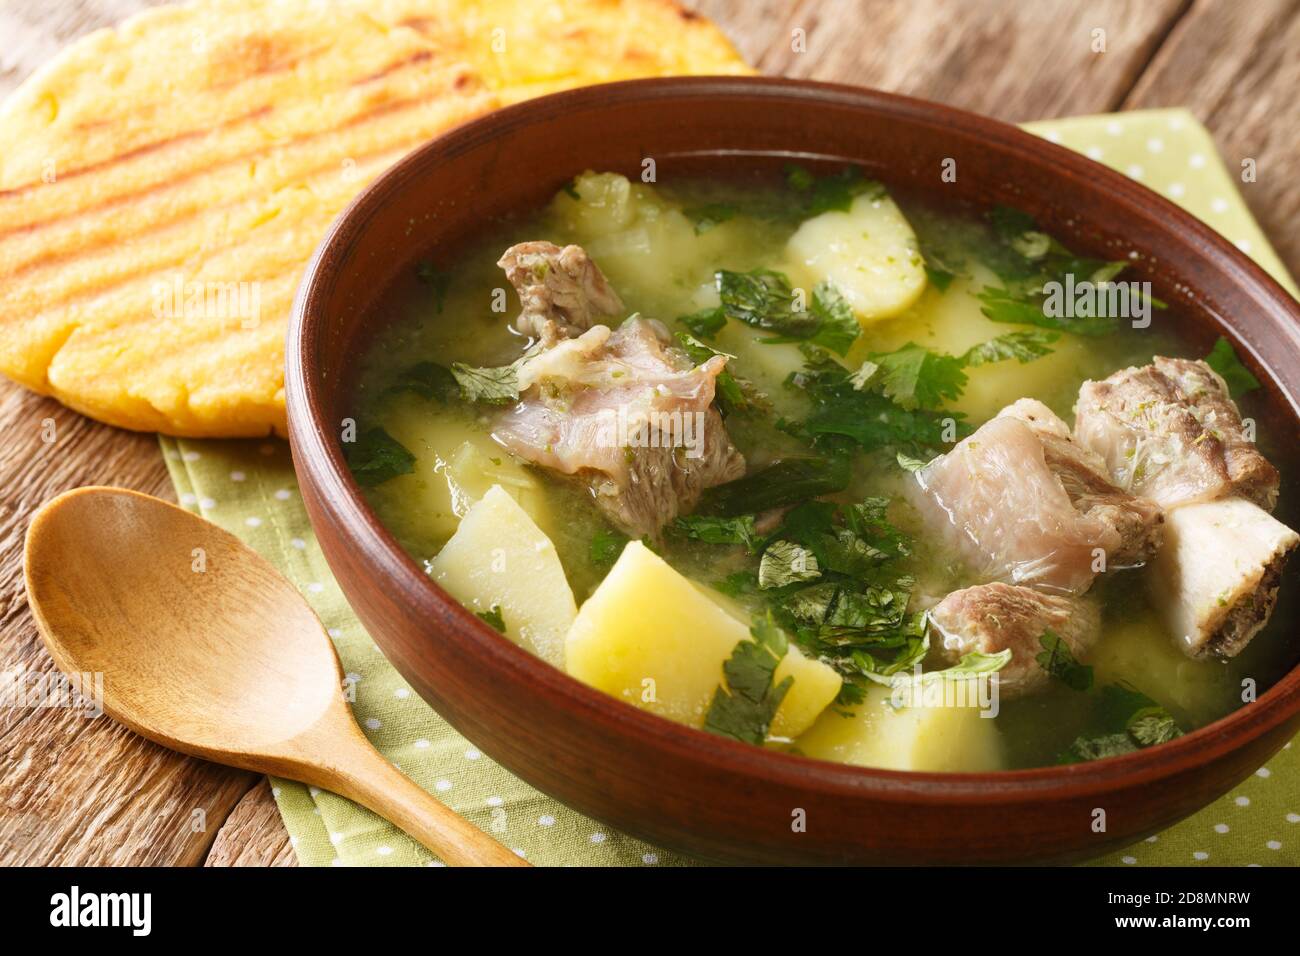 Soupe colombienne de côtes de bœuf avec pommes de terre et herbes Caldo de costilla dans un bol sur la table. Horizontale Banque D'Images